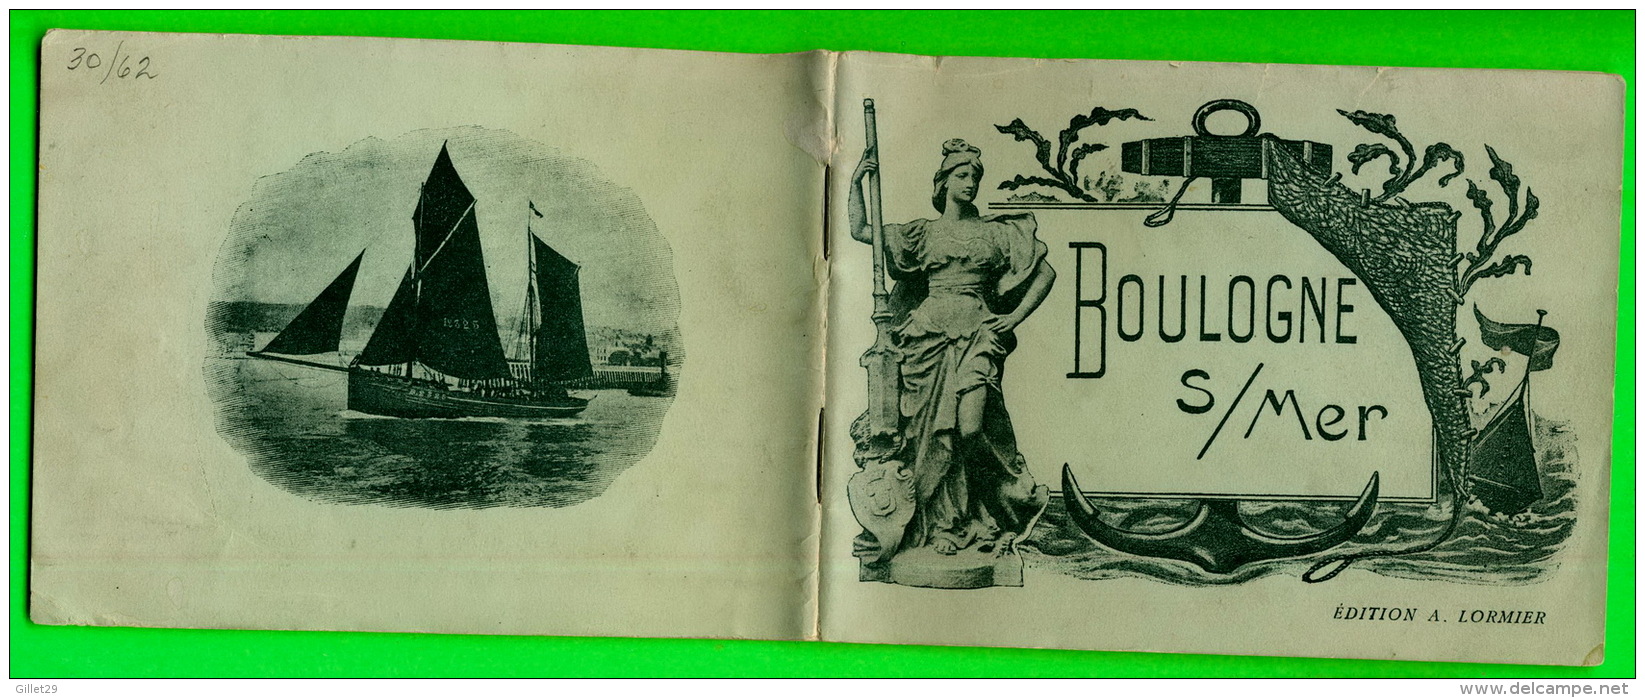 LIVRE TOURISME - BOULOGNE SUR MER (62) EN 1900  - ÉDITEUR, A. LORMIER -  52 PAGES - - Tourism